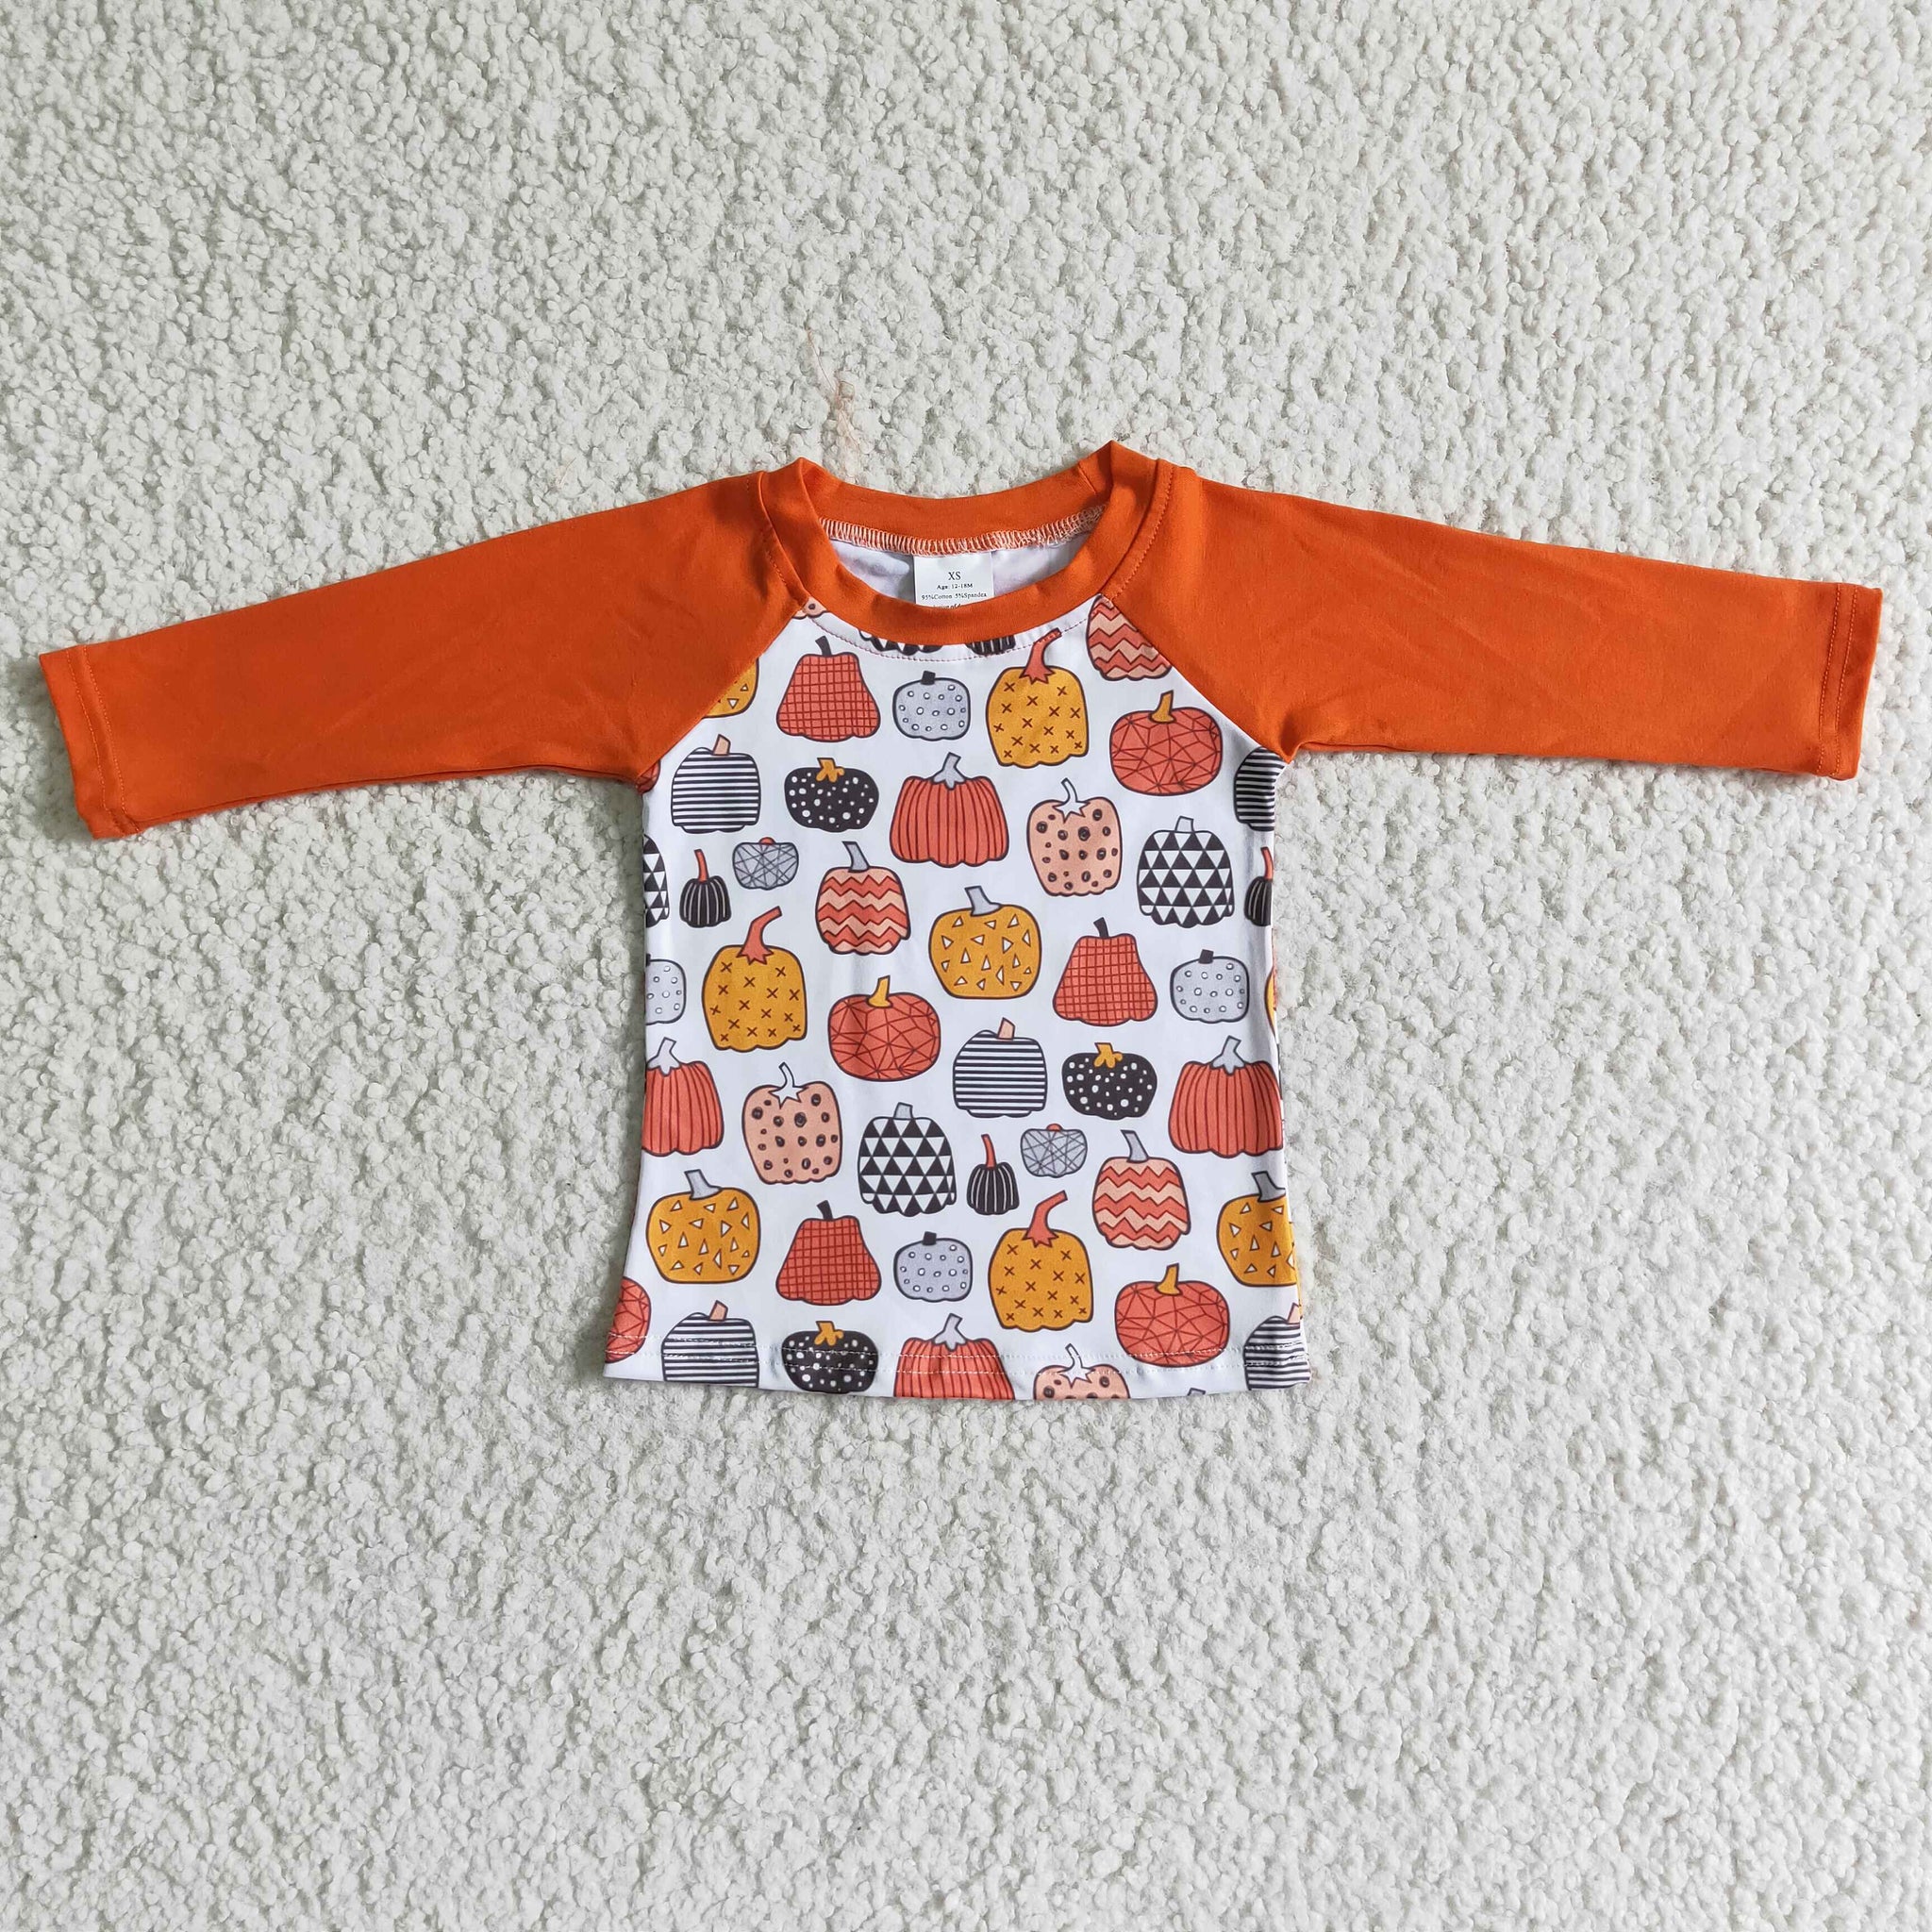 6 A30-6-1 boy orange pumpkin shirt top